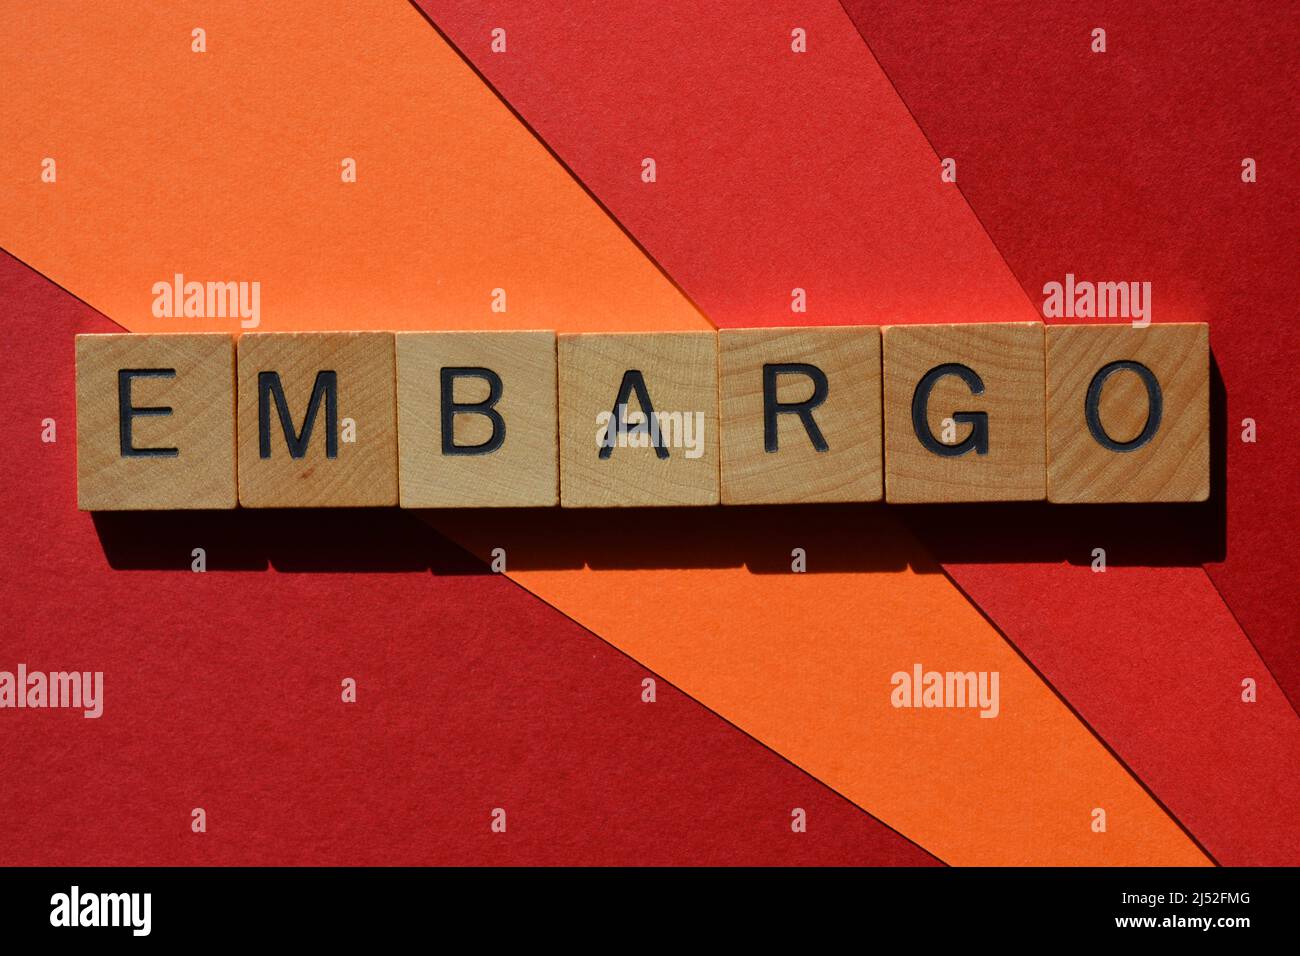 Embargo, mot en lettres de l'alphabet de bois isolées sur fond rouge et orange Banque D'Images